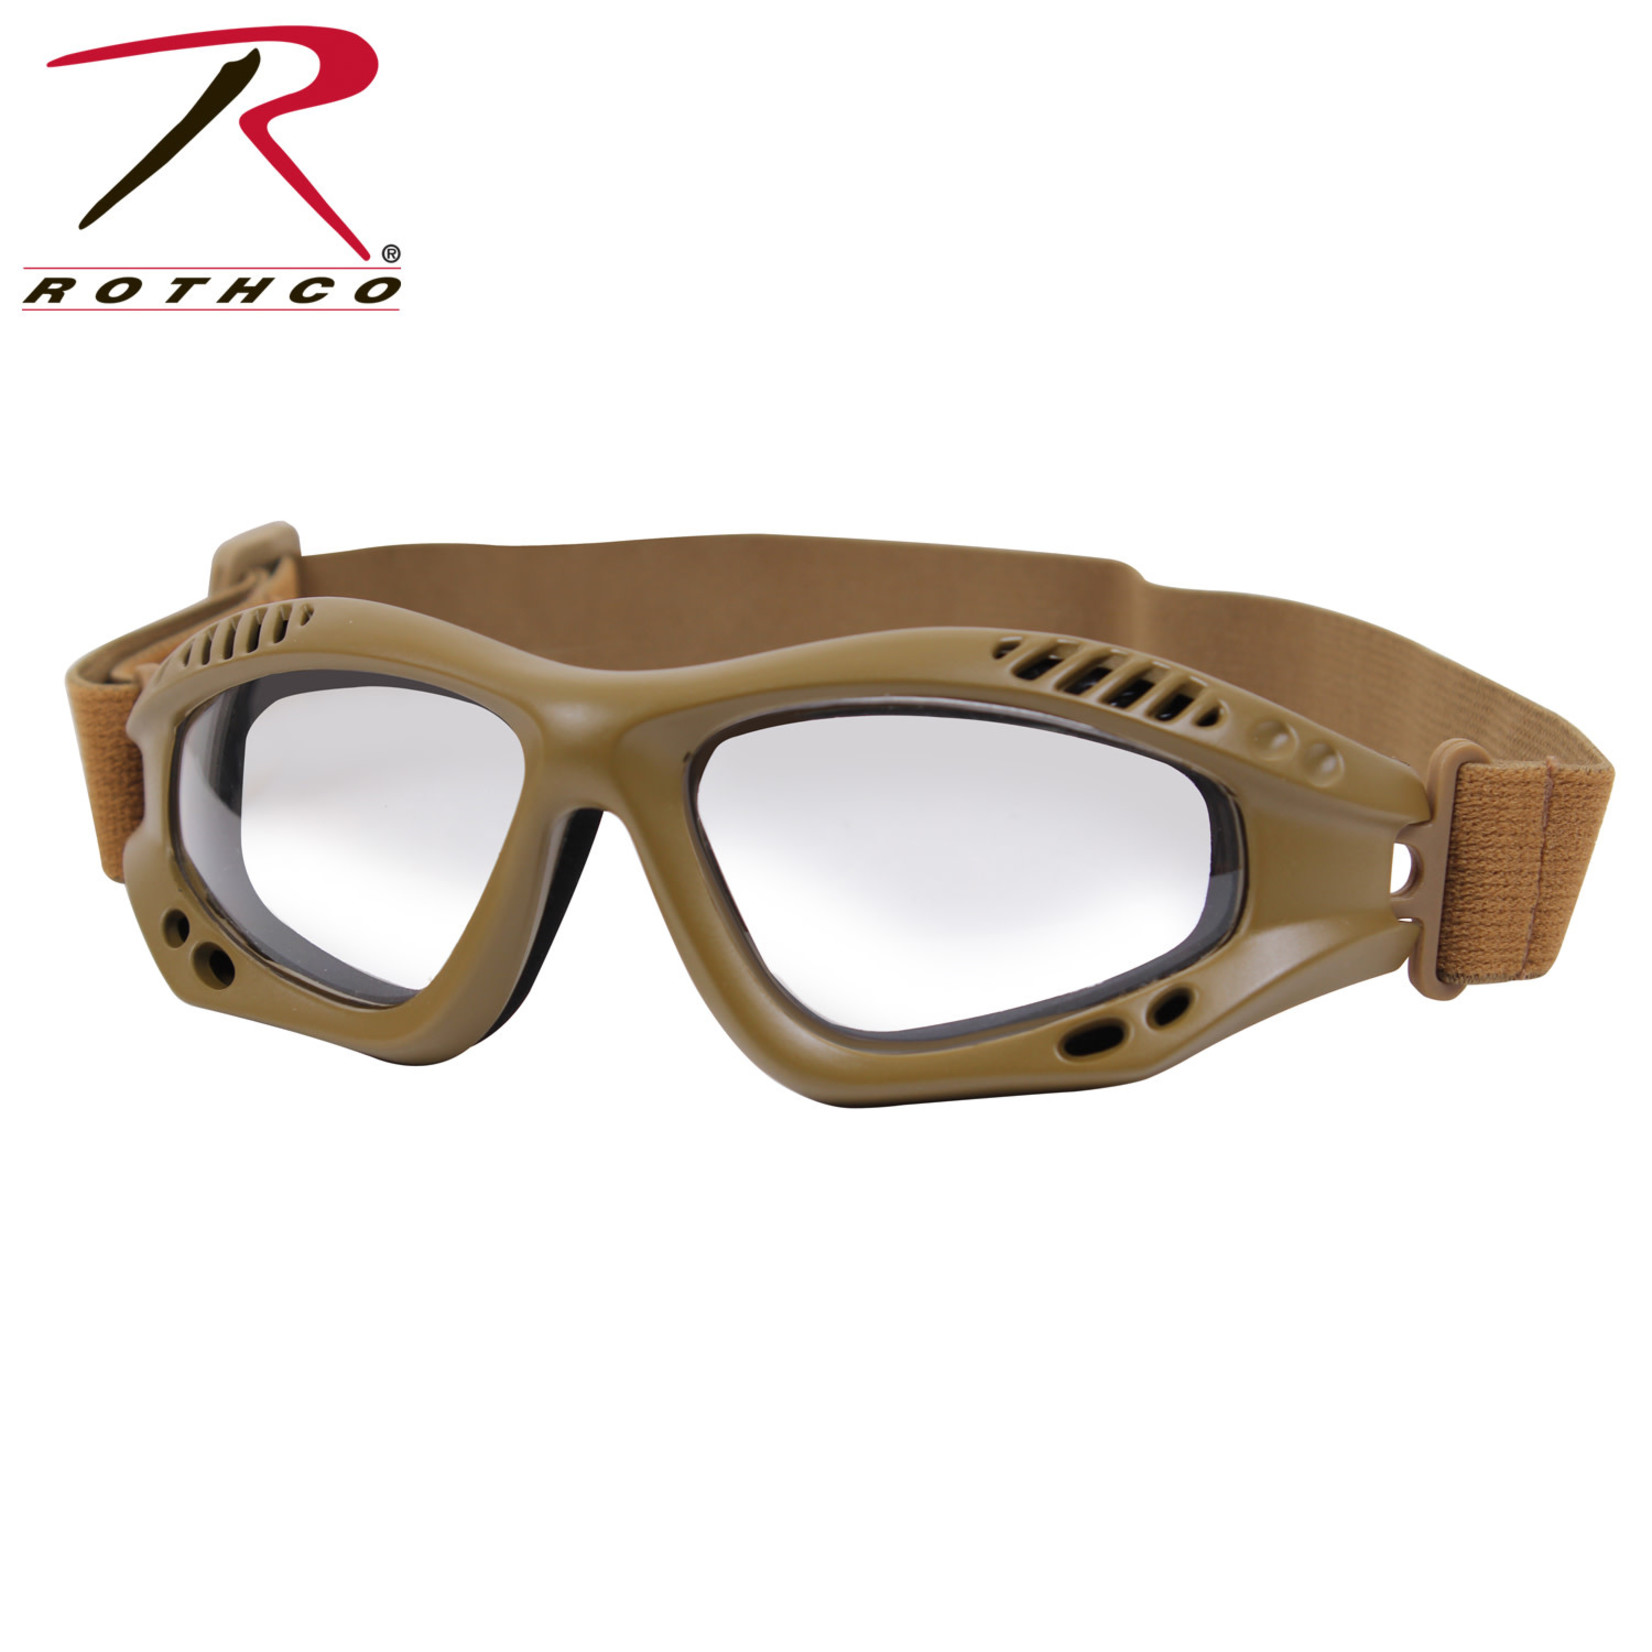 Rothco Rothco VenTec Safety Goggles